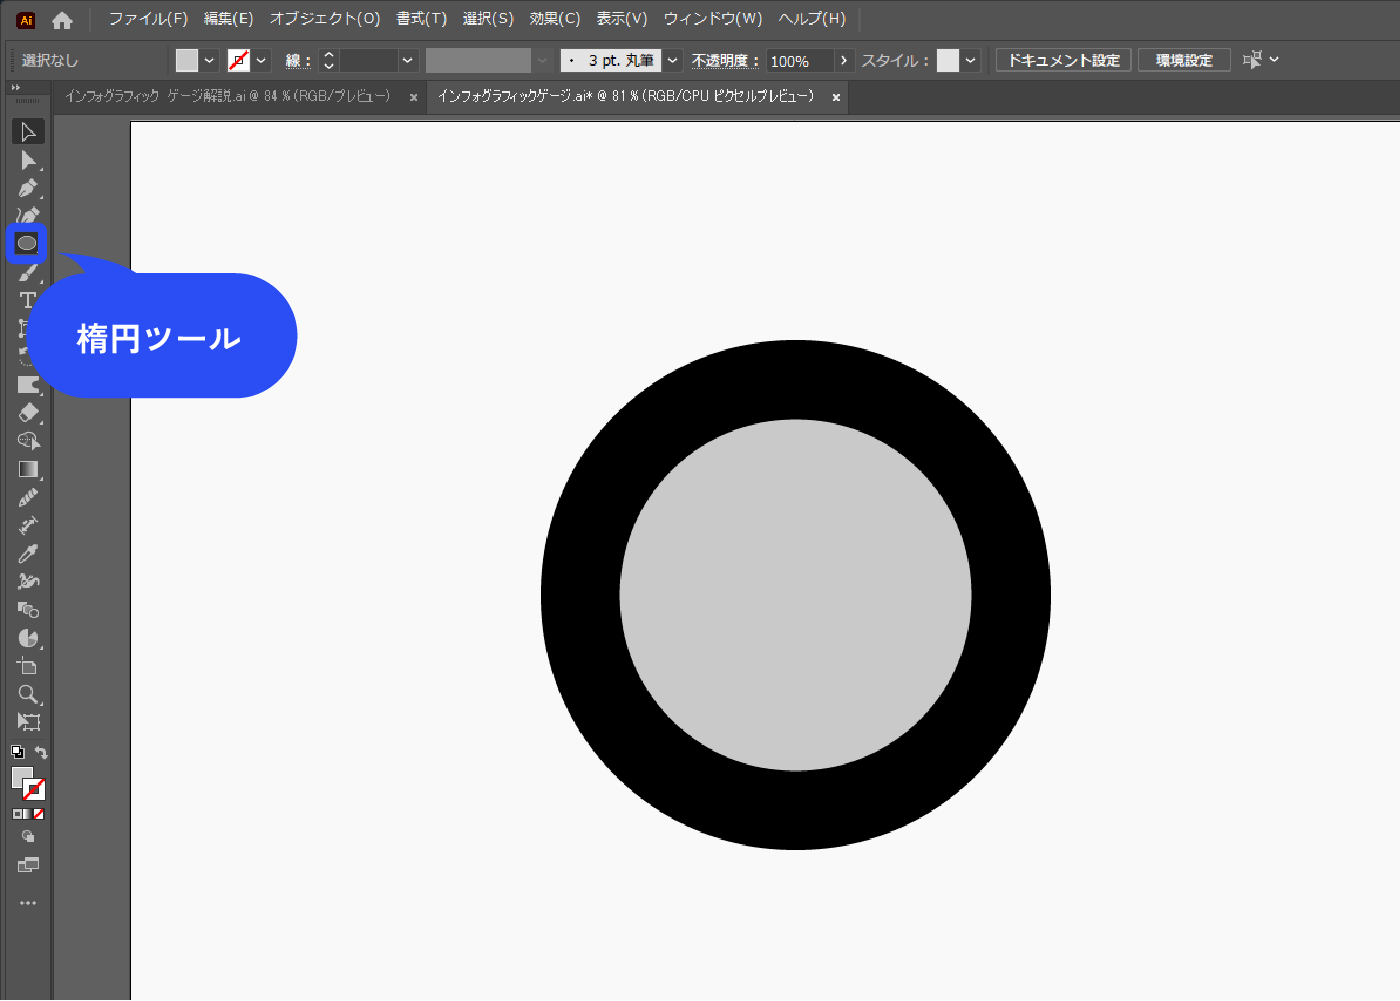 楕円ツールで正円を作ります。黒い円の上に灰色の円を重ねています。後で灰色の円でくり抜くので、黒い部分が目盛りの幅になります。